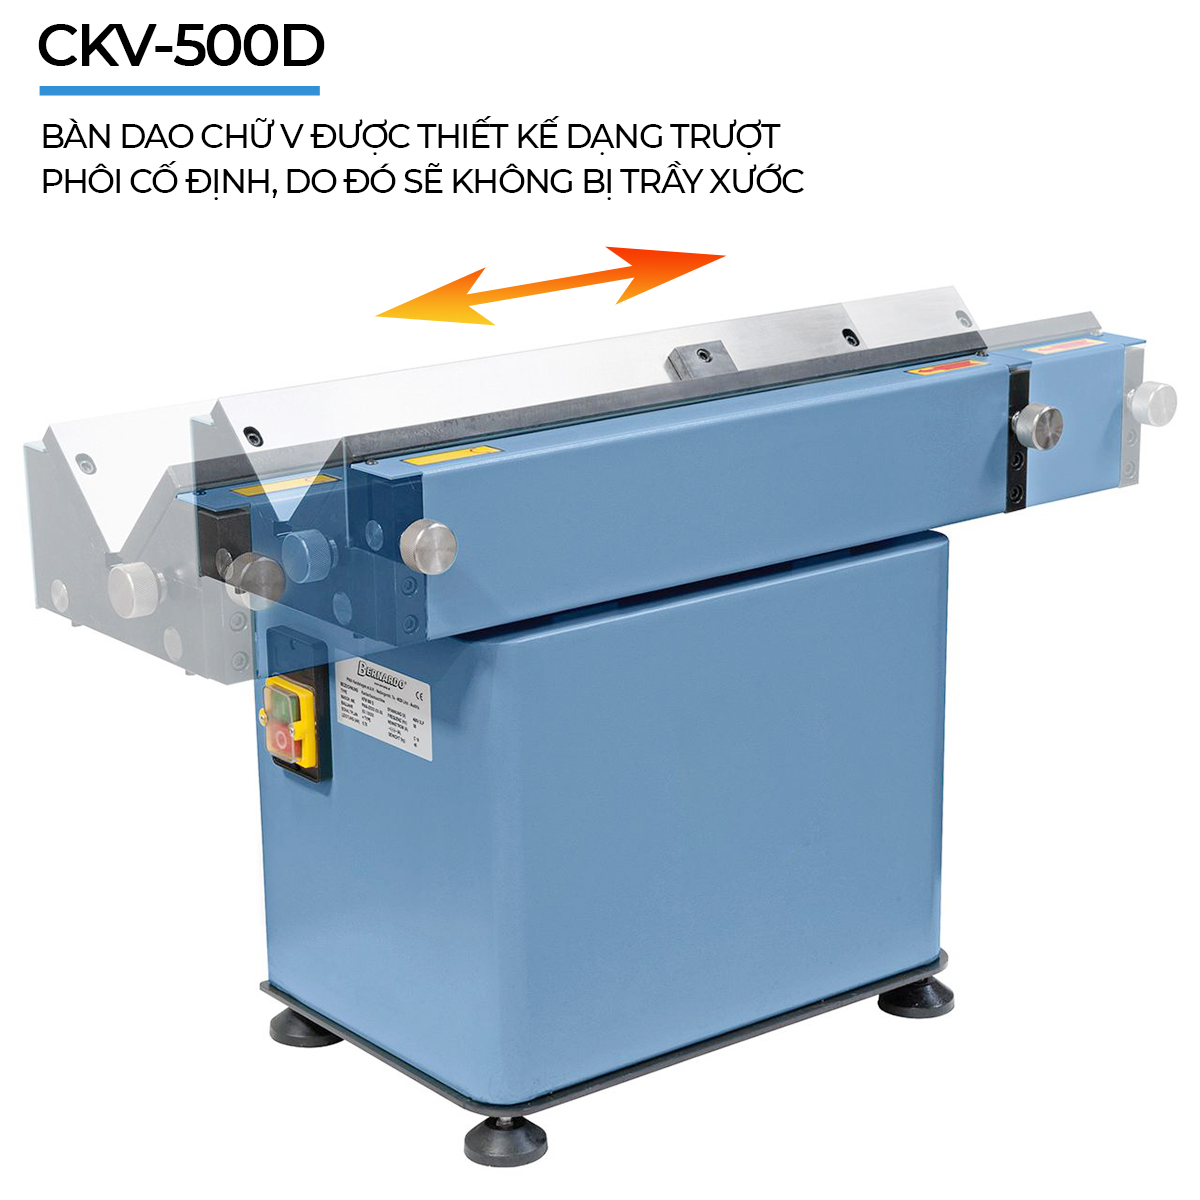 CKV-500D thiết kế cho phép phôi cố định, chống xước